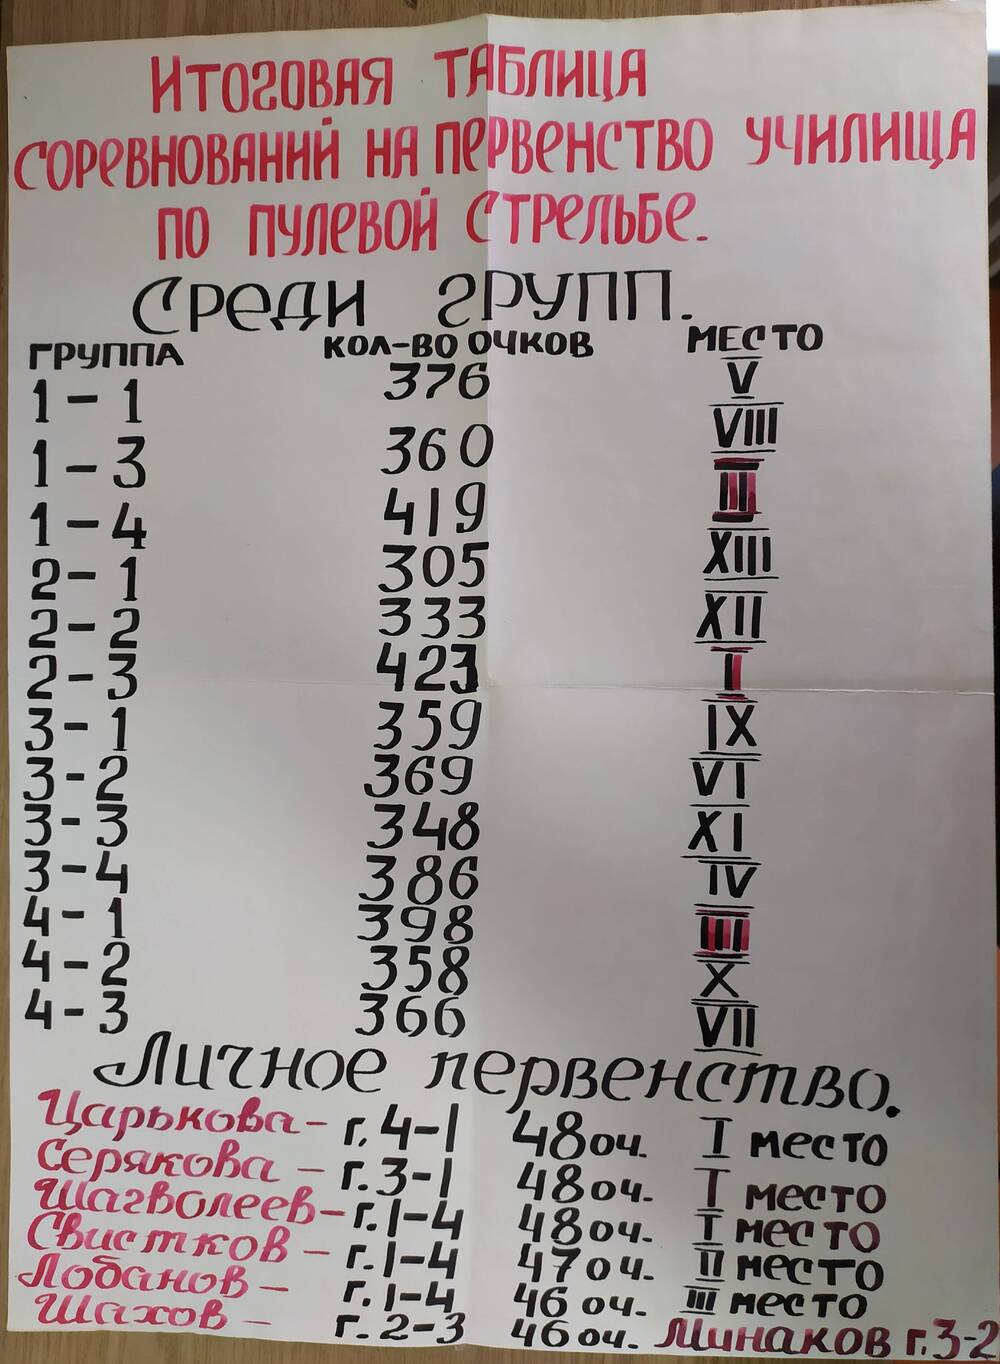 Итоговая таблица соревнований на первенство Трубчевского педагогического училища по пулевой стрельбе